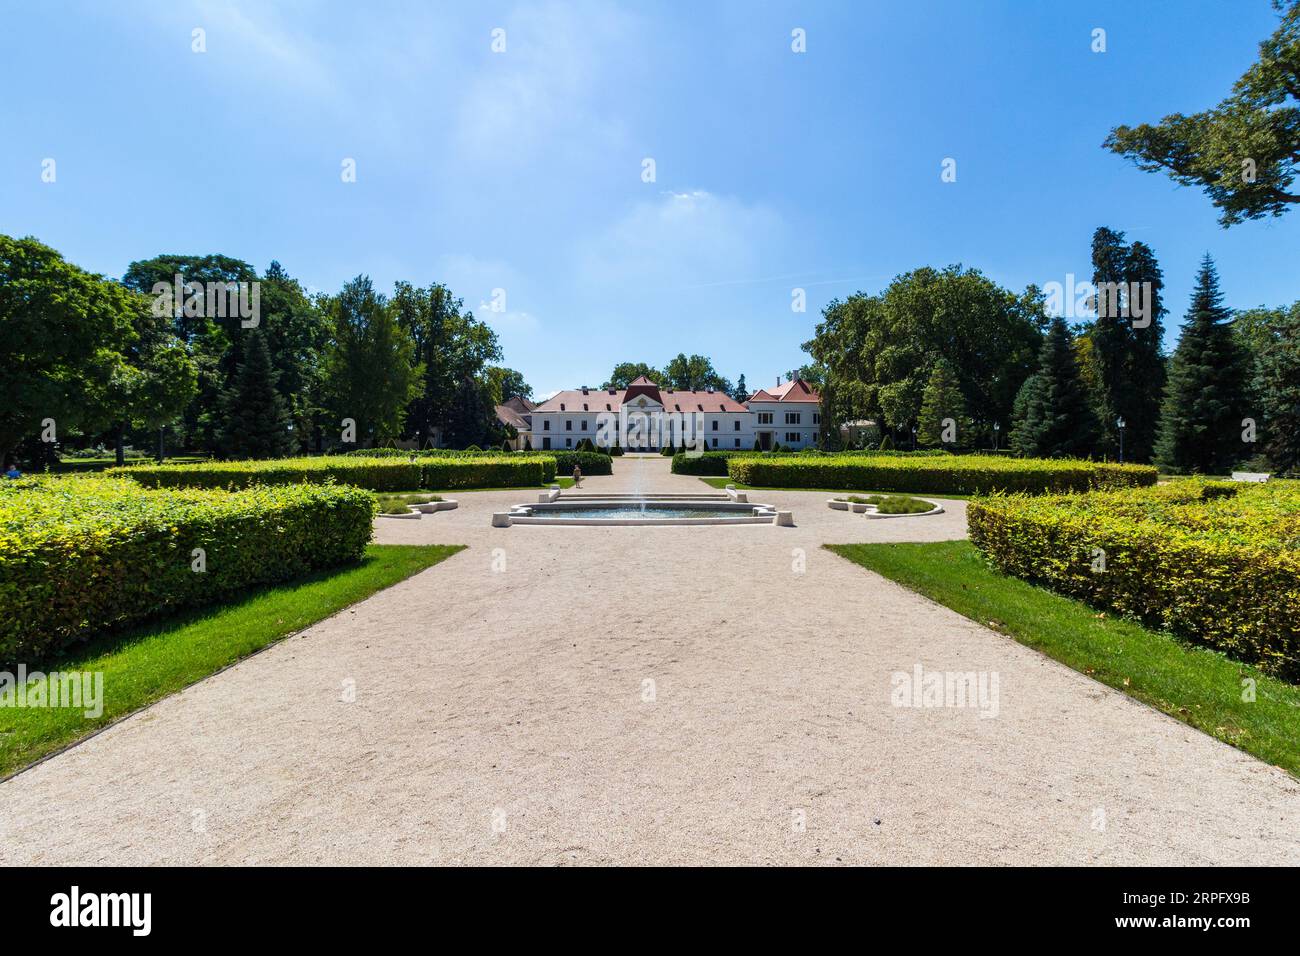 Facciata nord e giardino francese del palazzo Szechenyi, costruito nel 1750 in stile barocco, Nagycenk, Ungheria Foto Stock